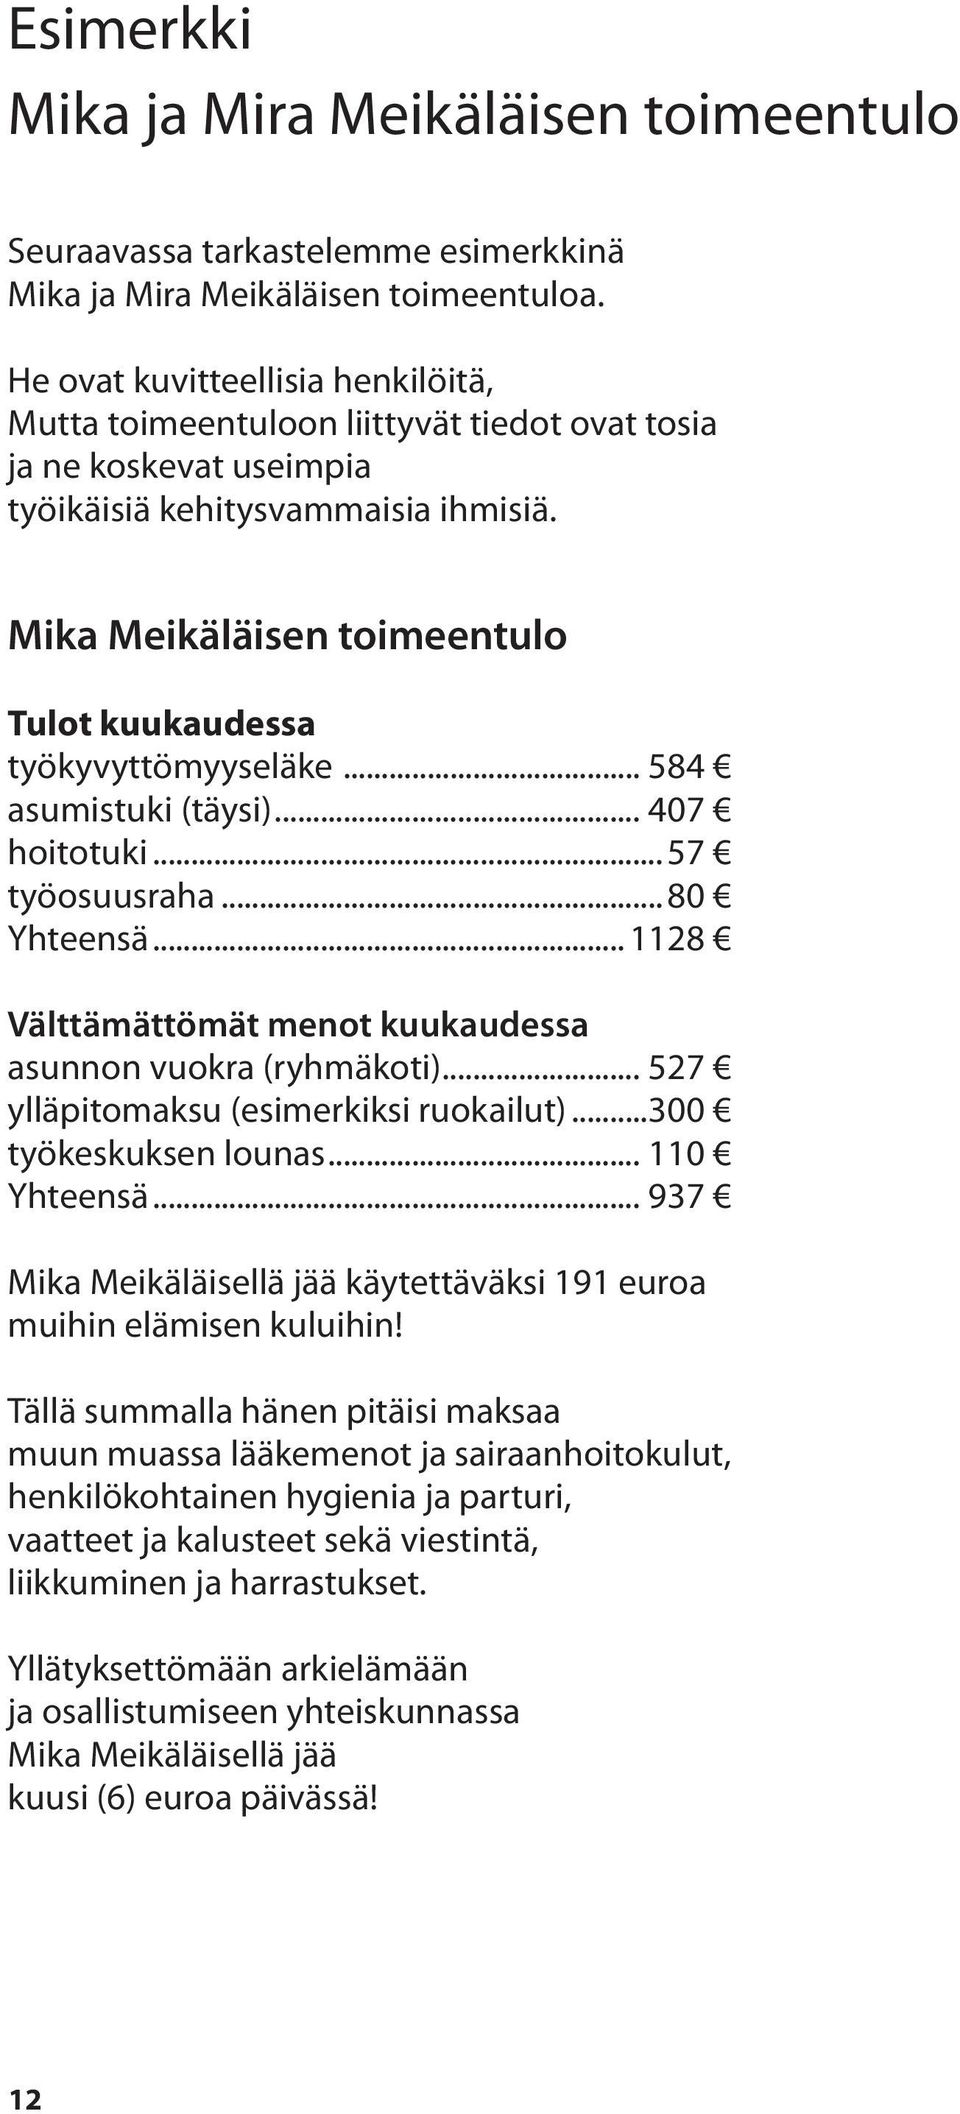 Mika Meikäläisen toimeentulo Tulot kuukaudessa työkyvyttömyyseläke... 584 asumistuki (täysi)... 407 hoitotuki... 57 työosuusraha... 80 Yhteensä.